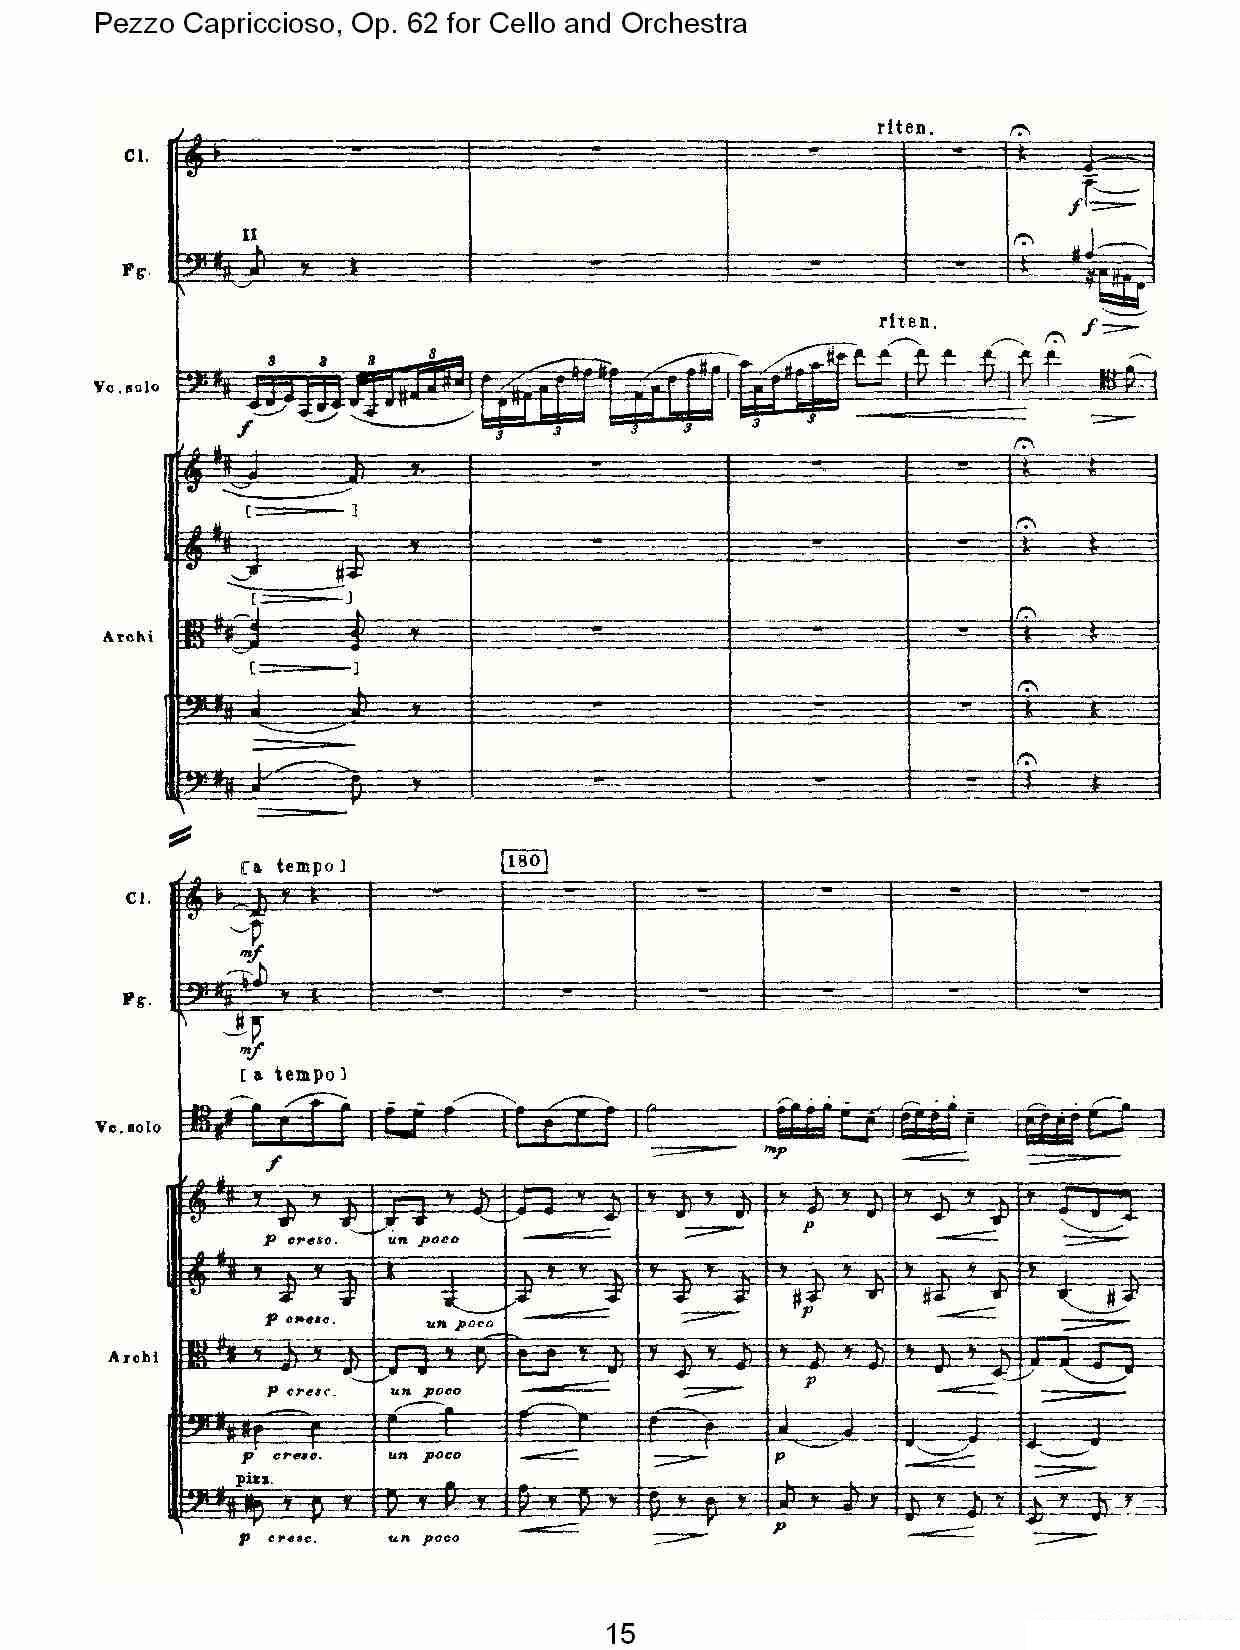 彼得·伊利奇·柴可夫斯基《Pezzo Capriccioso, Op.62》提琴谱（第15页）